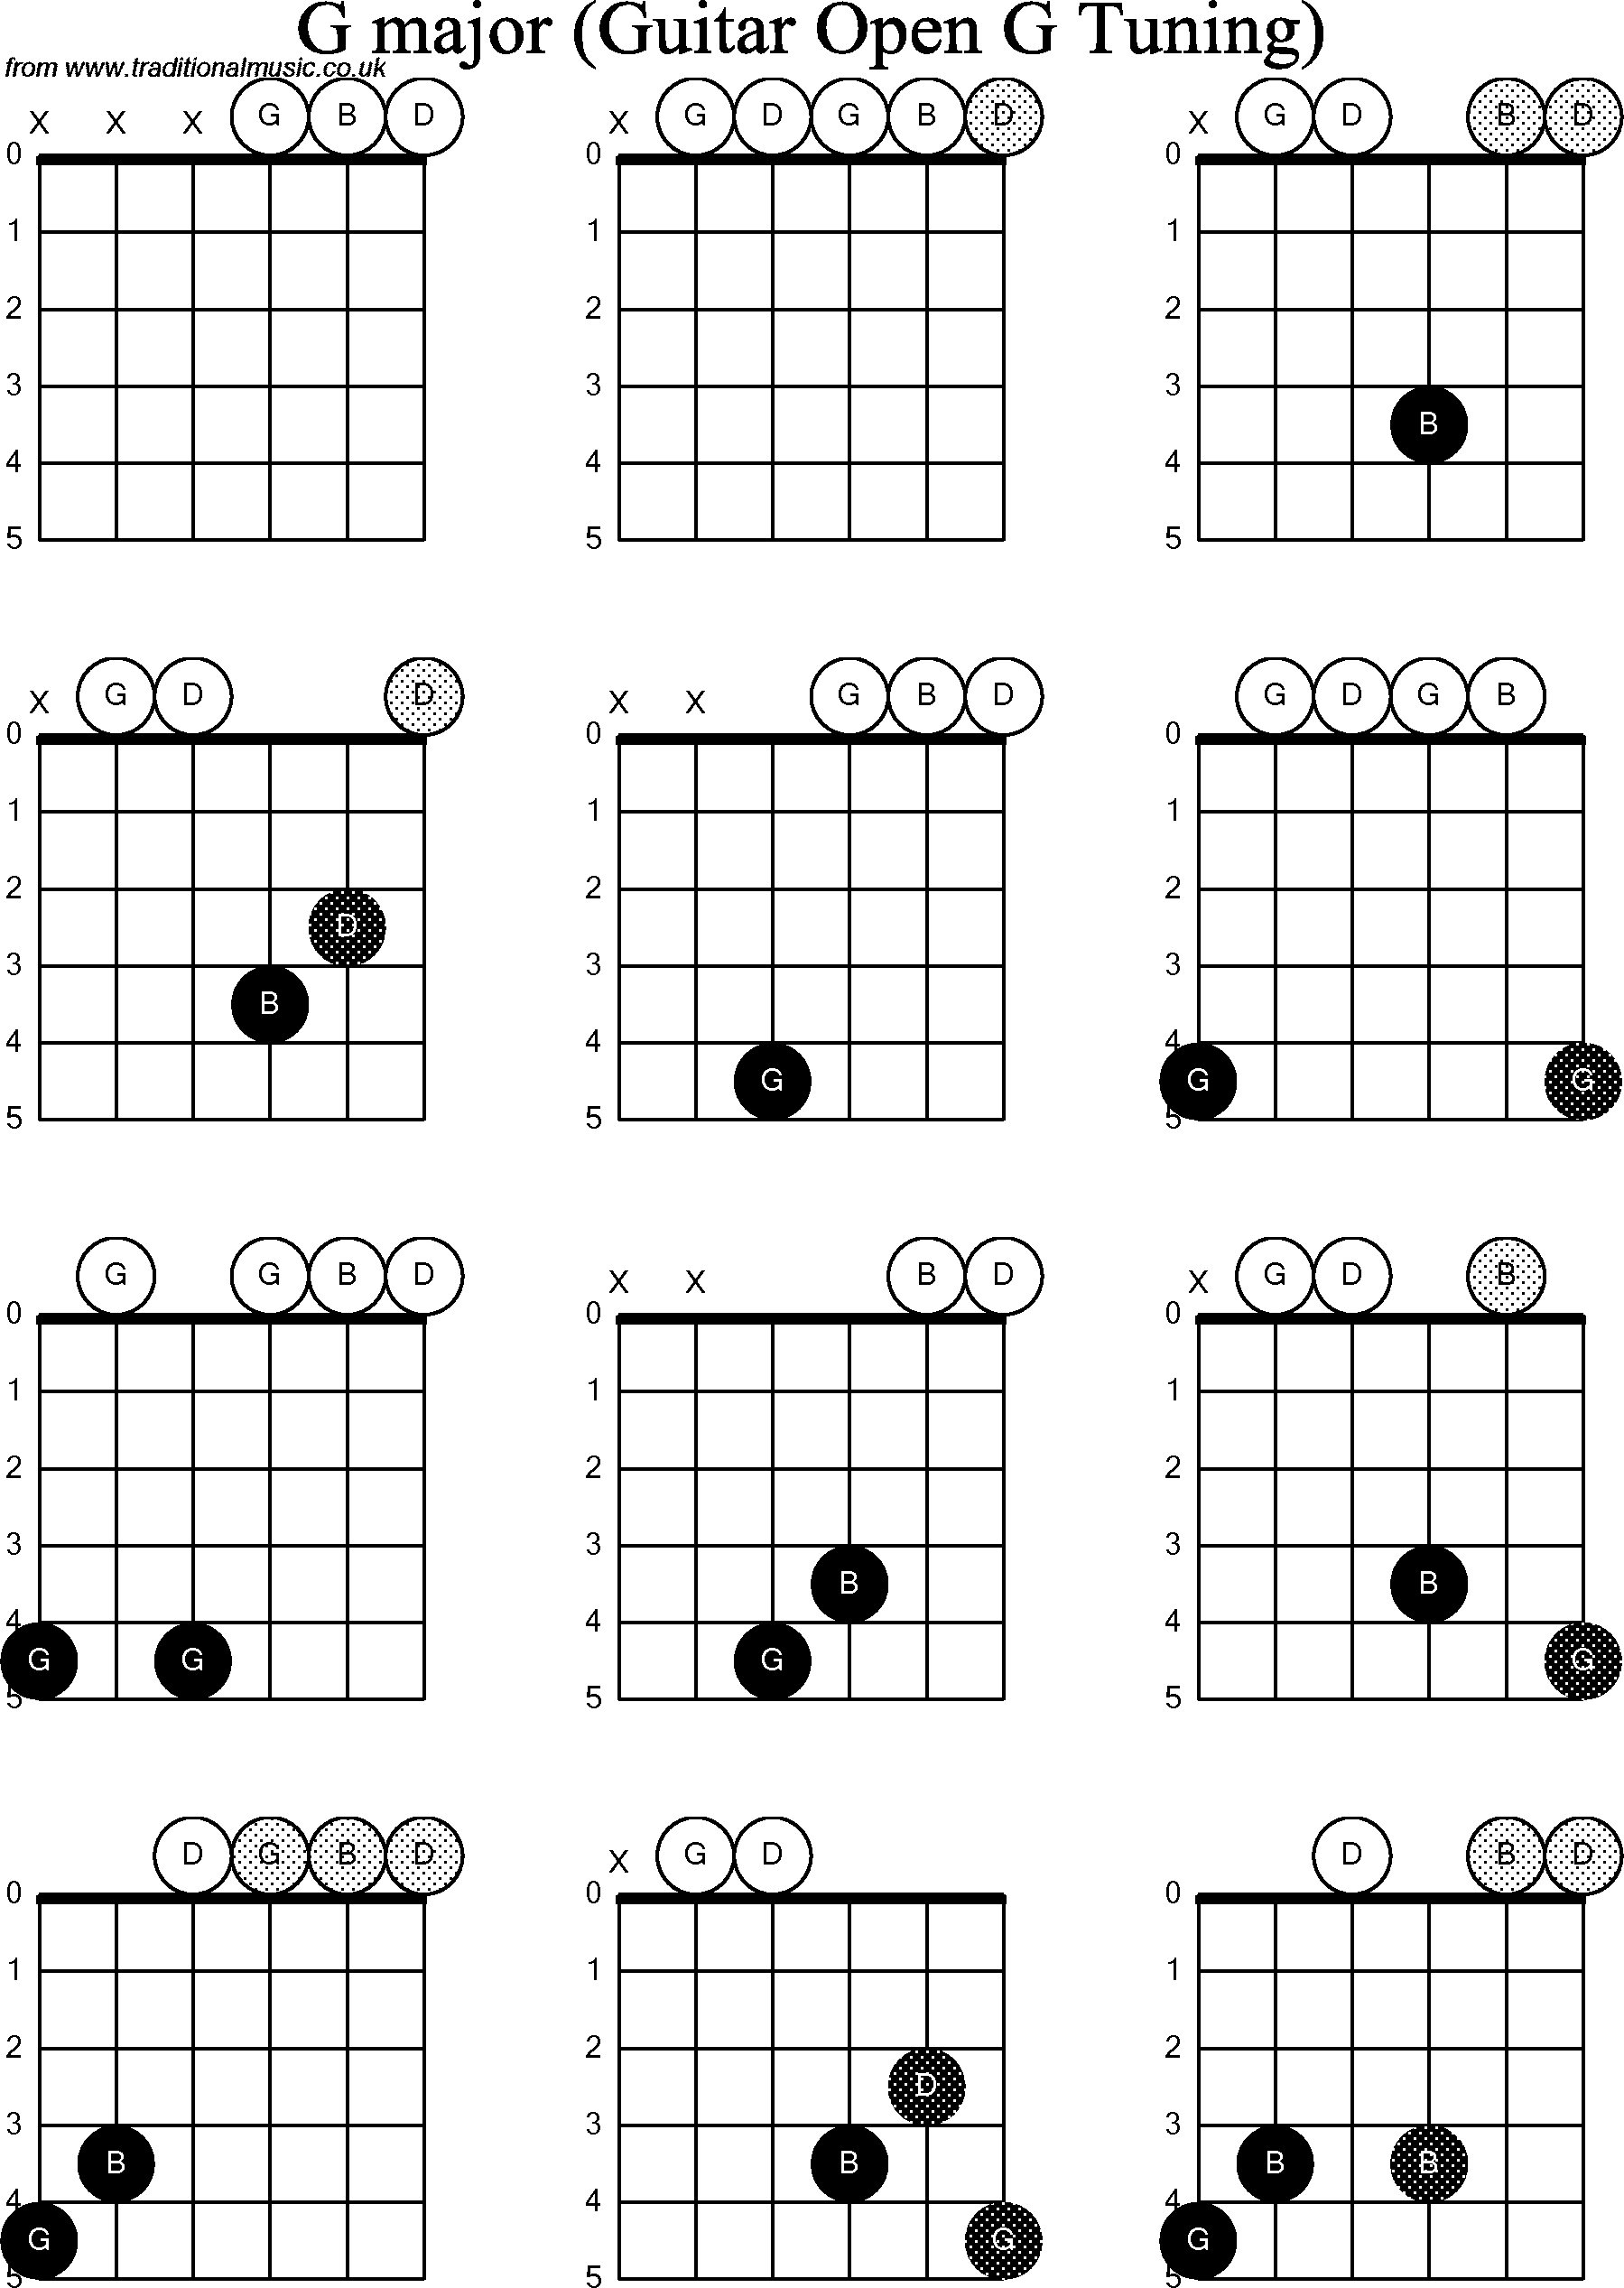 Chord diagrams for Dobro G